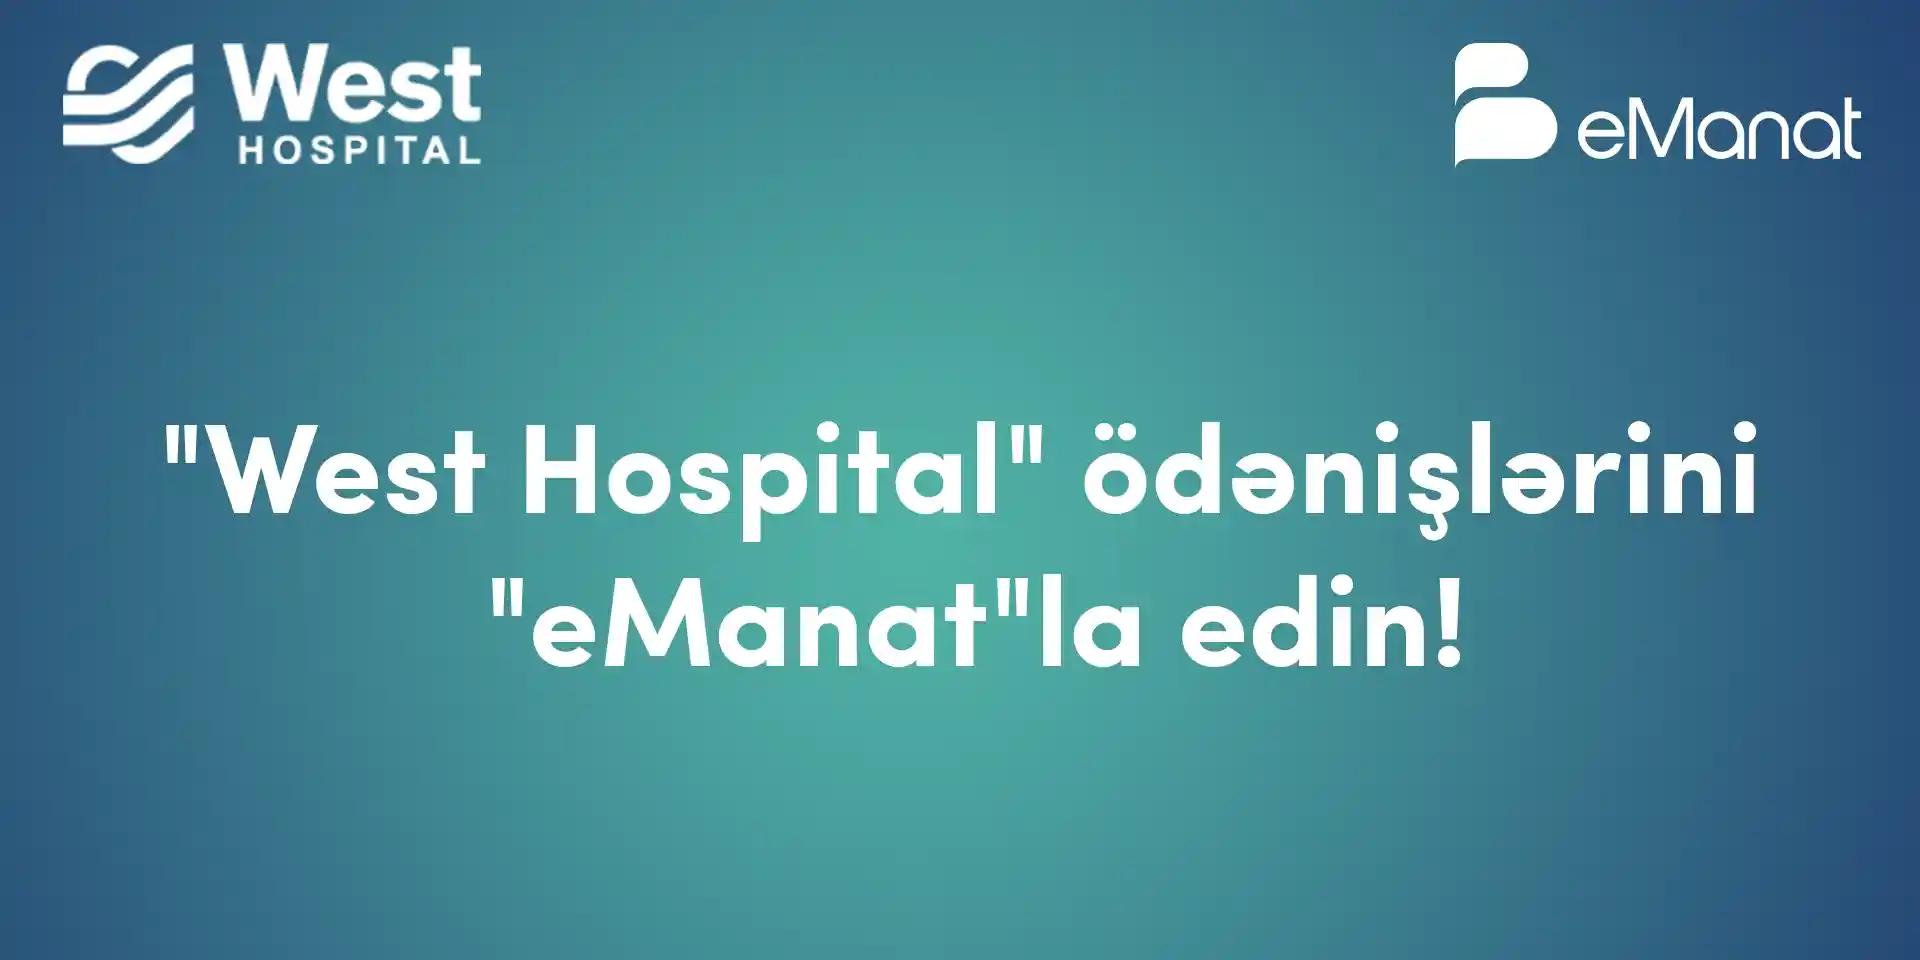 платежи-west-hospital-в-emanat!